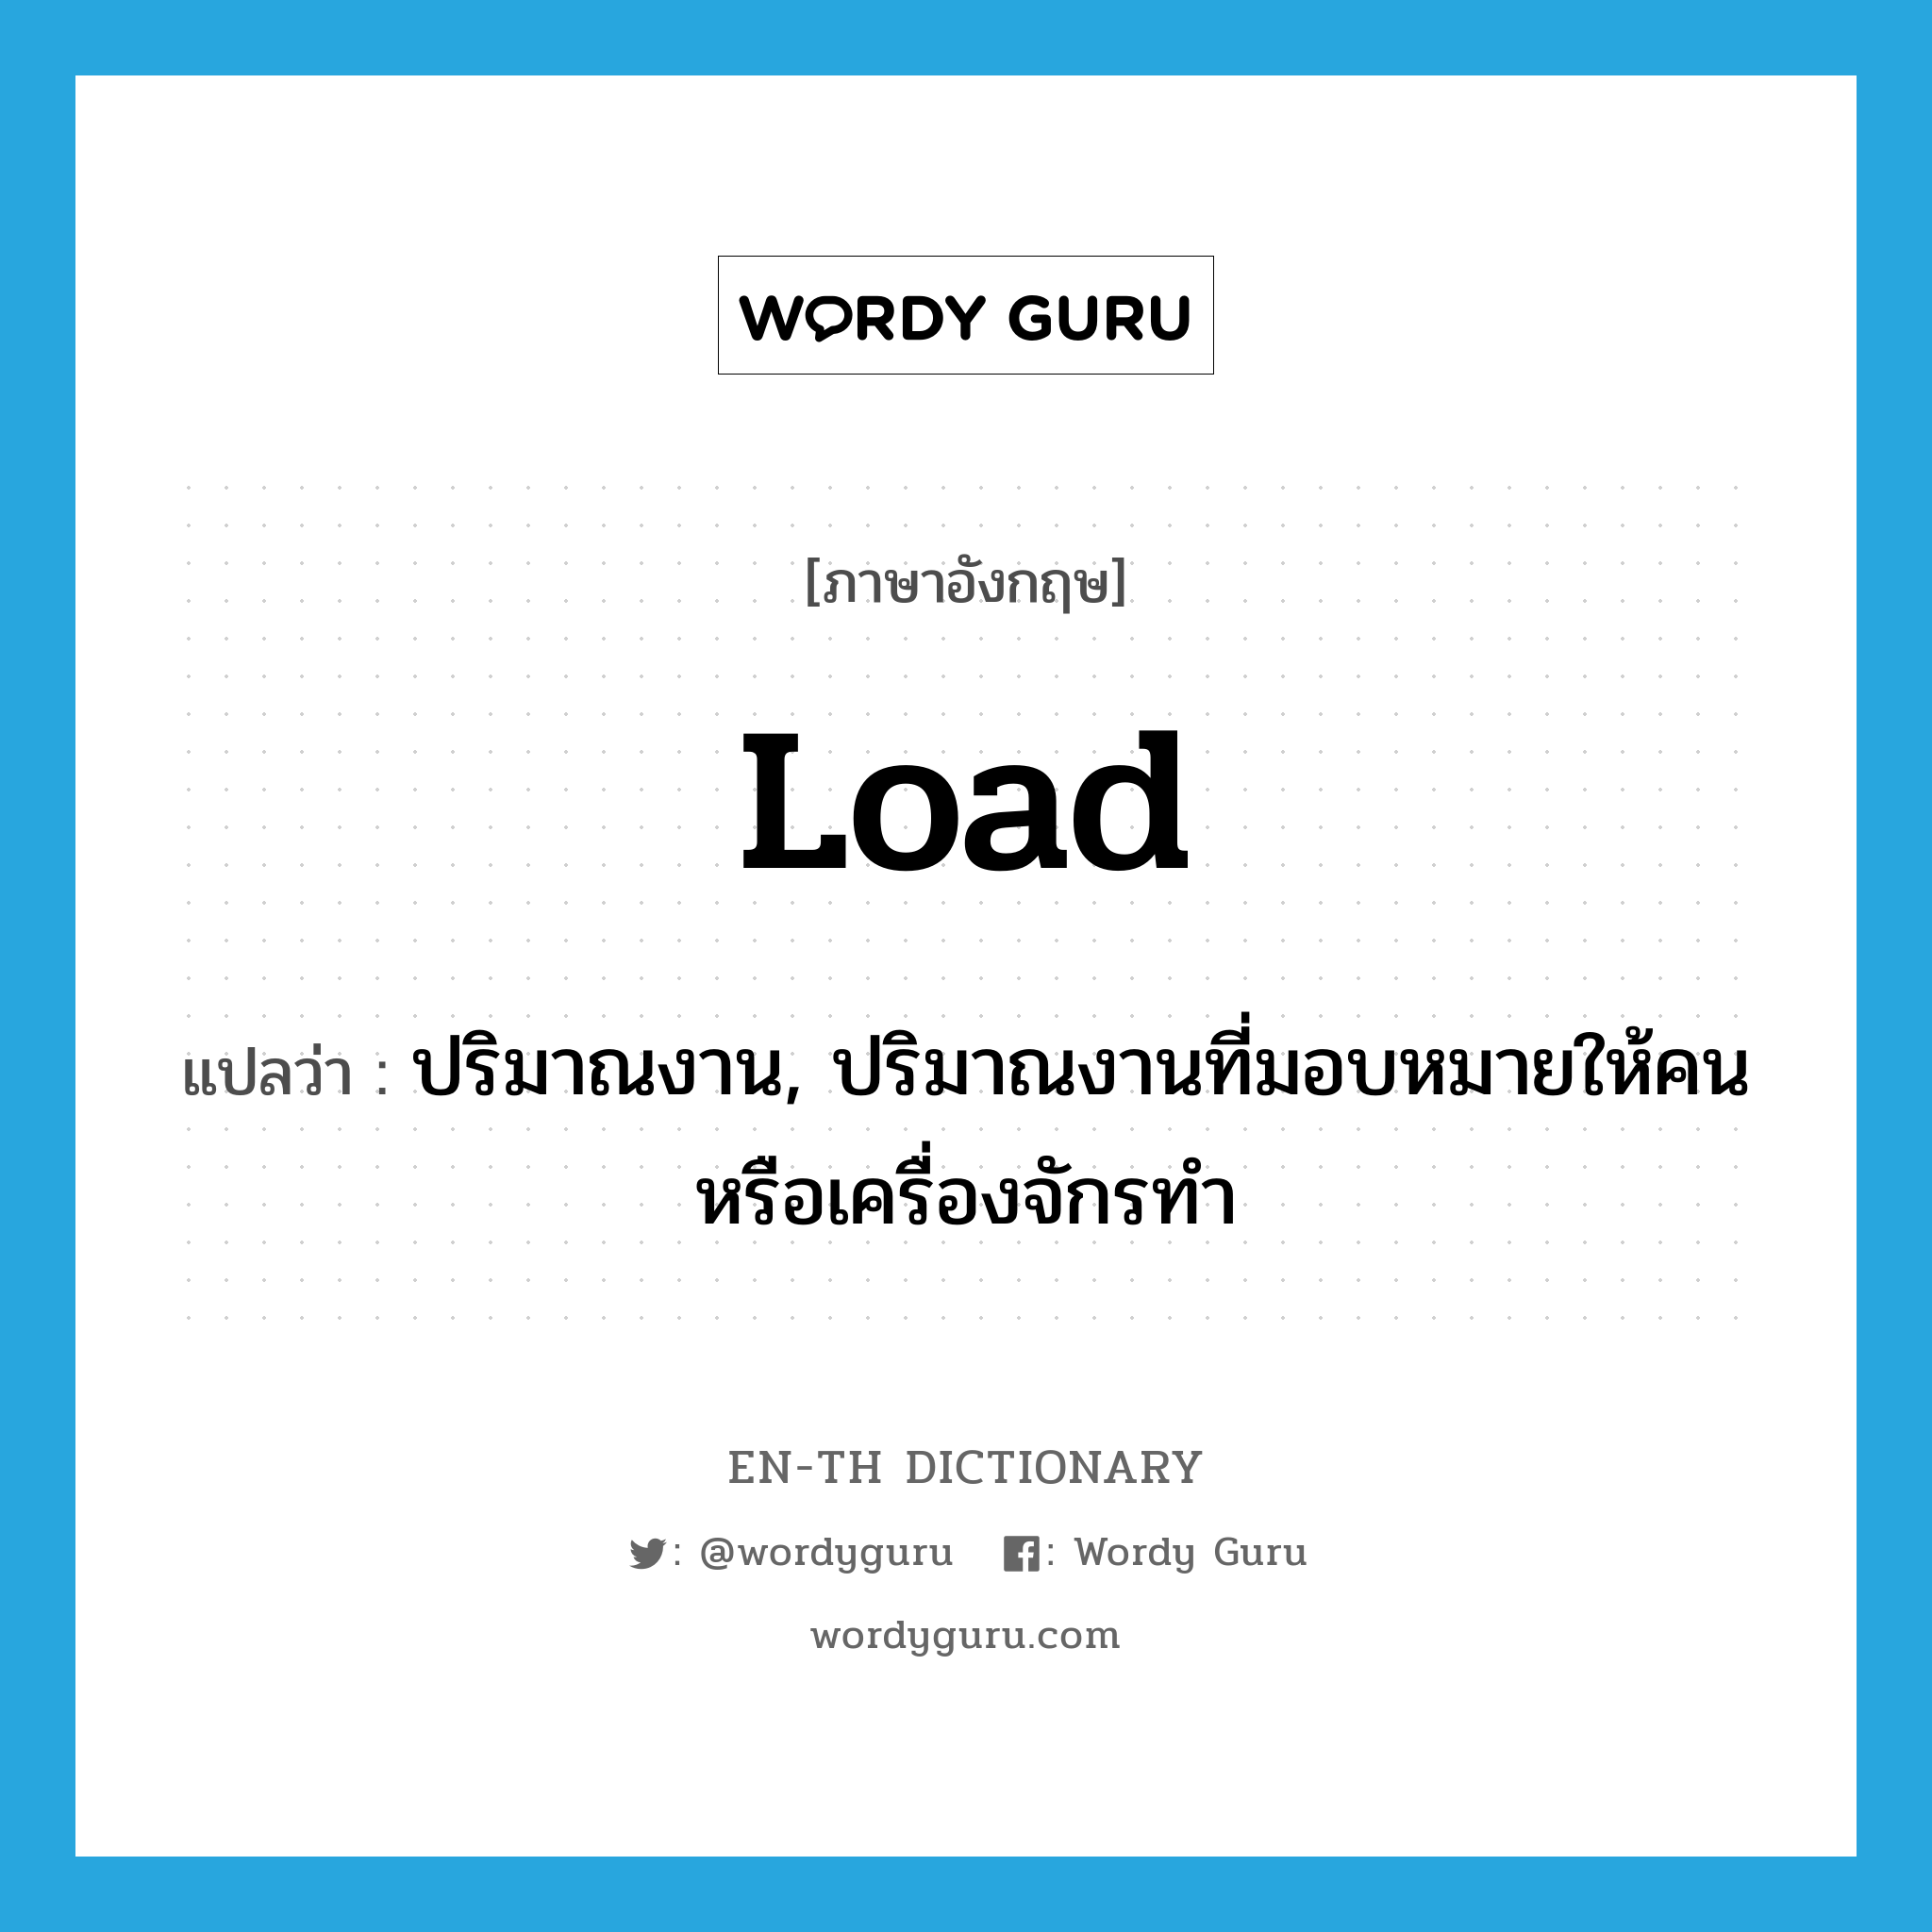 load แปลว่า?, คำศัพท์ภาษาอังกฤษ load แปลว่า ปริมาณงาน, ปริมาณงานที่มอบหมายให้คนหรือเครื่องจักรทำ ประเภท N หมวด N